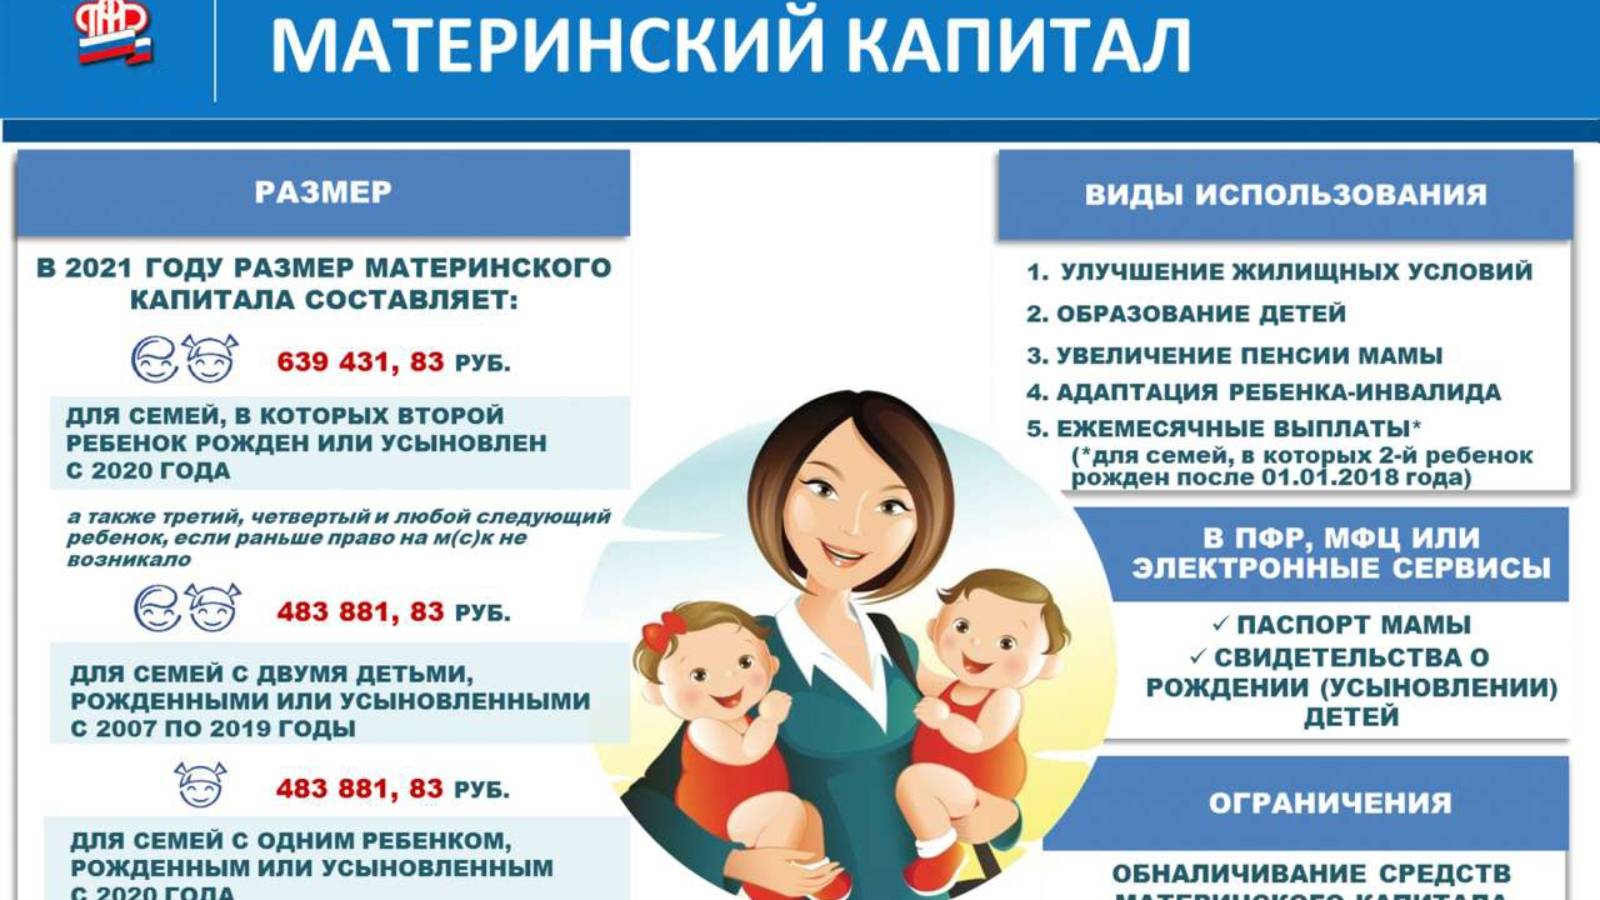 Материнский капитал за второго ребенка: до какого года будет выплачиваться, размер сертификата и как оформить документ